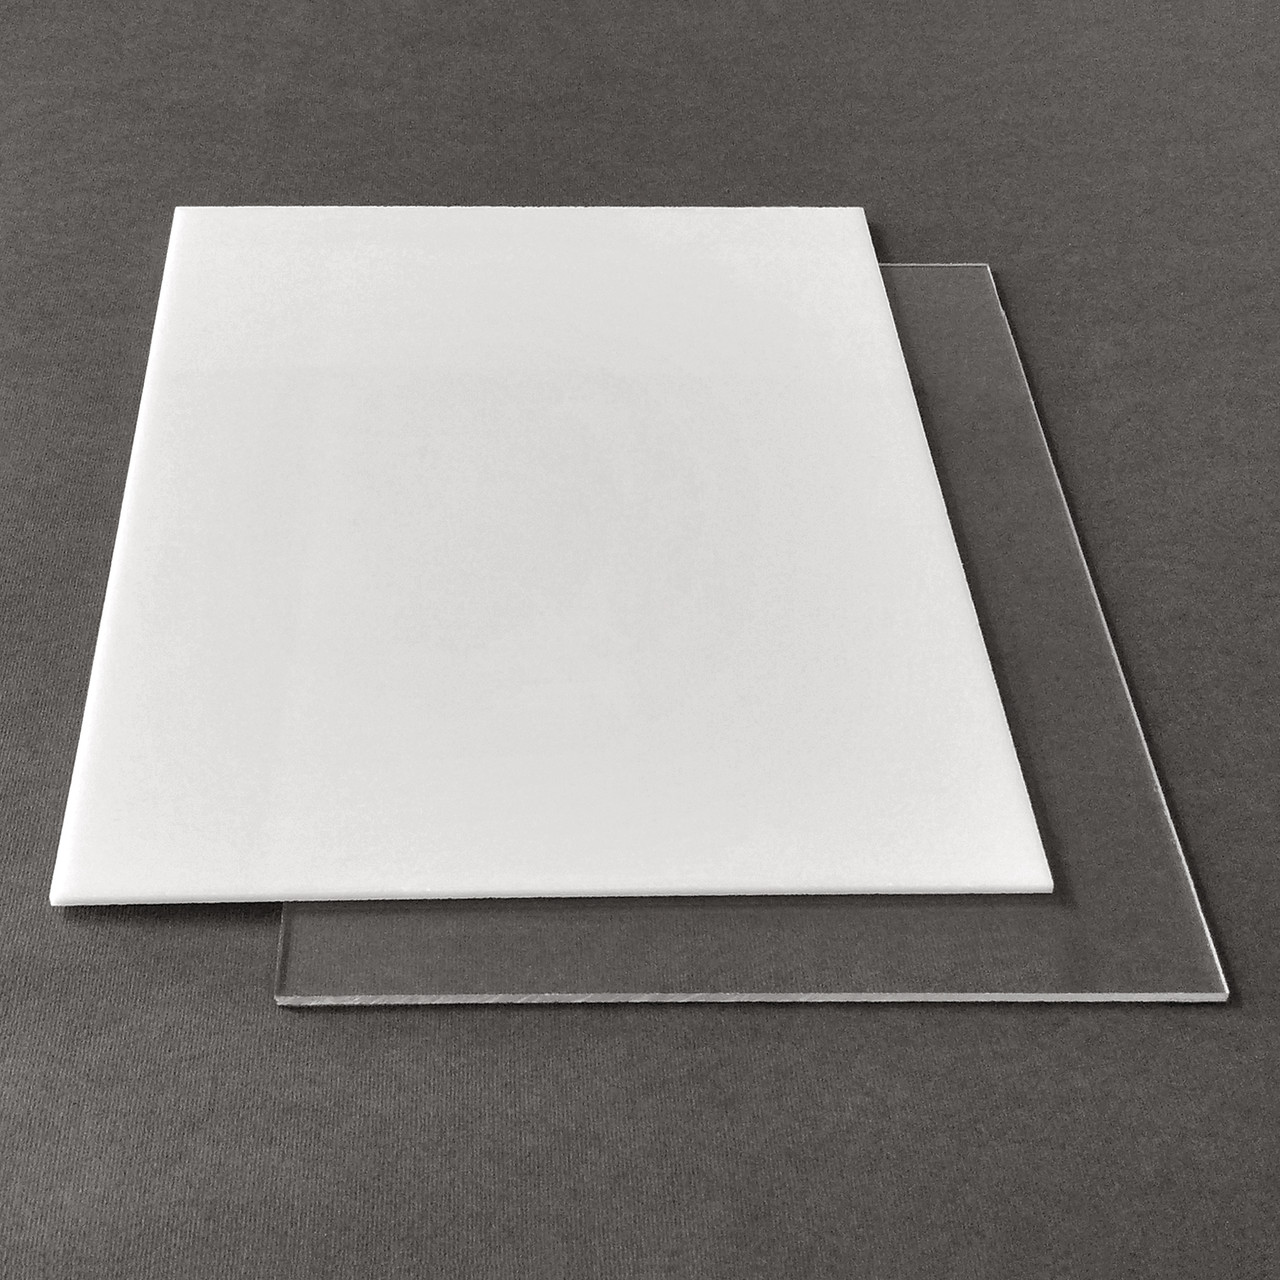 Рекламний пластик САН Plexan, прозорий, лист 2.05 х 3.05 м, 3 мм